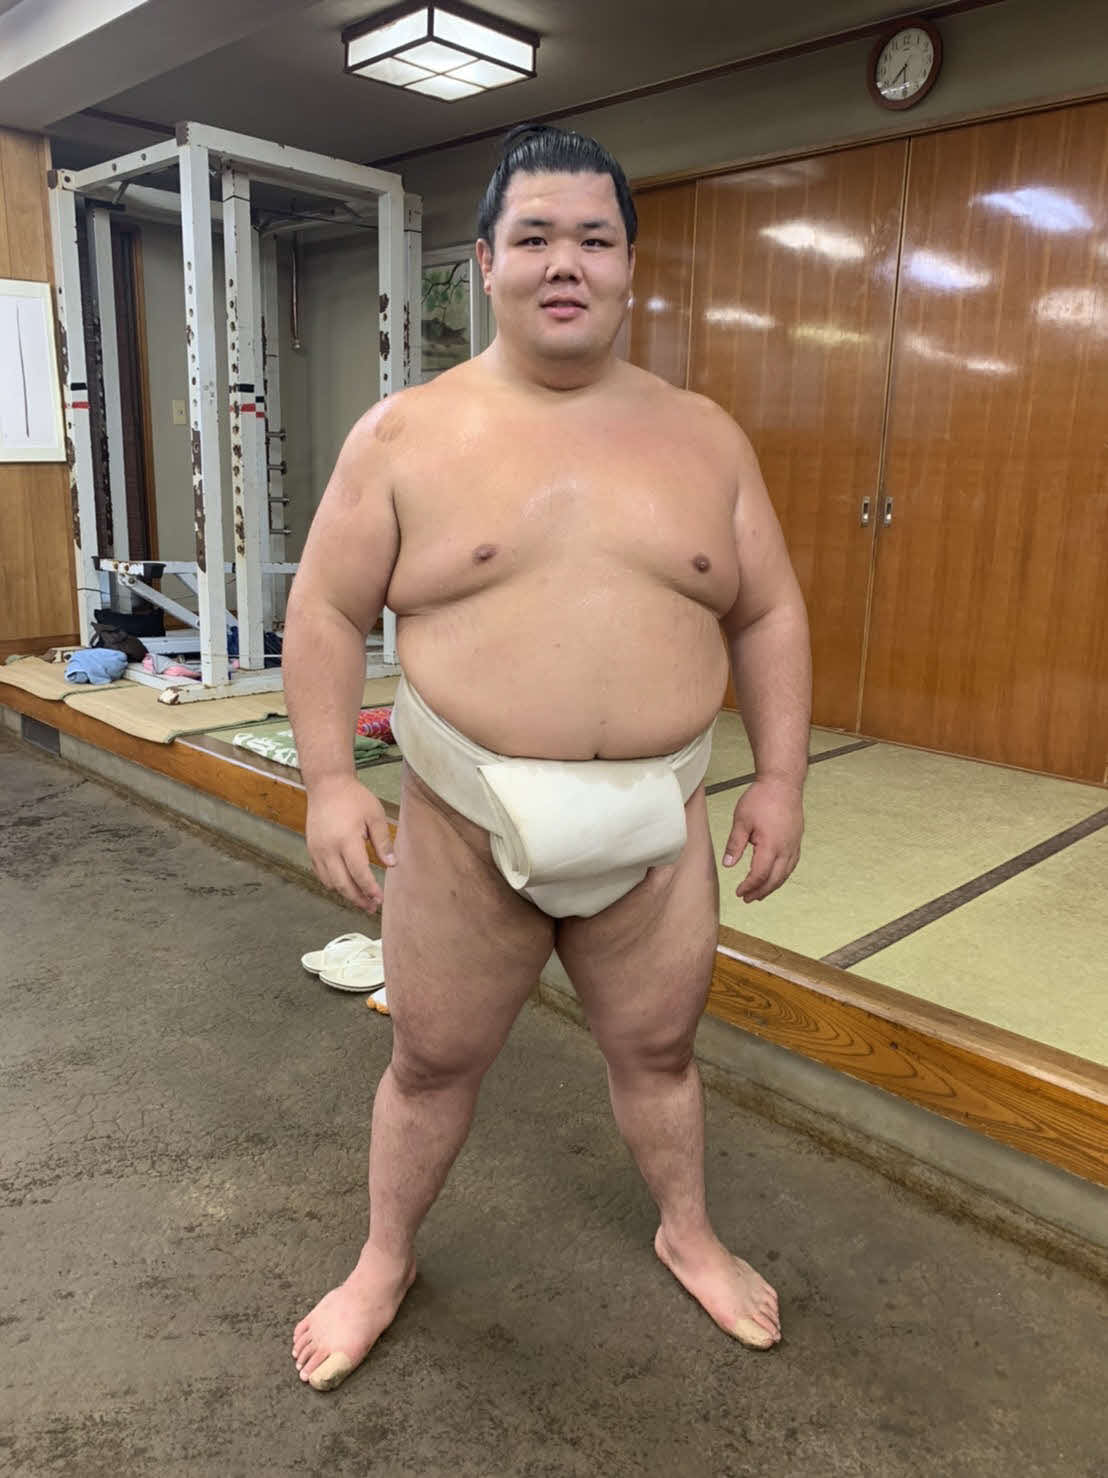 阿武咲24歳迎え危機感「若くない」現状打破誓う - 大相撲写真ニュース : 日刊スポーツ